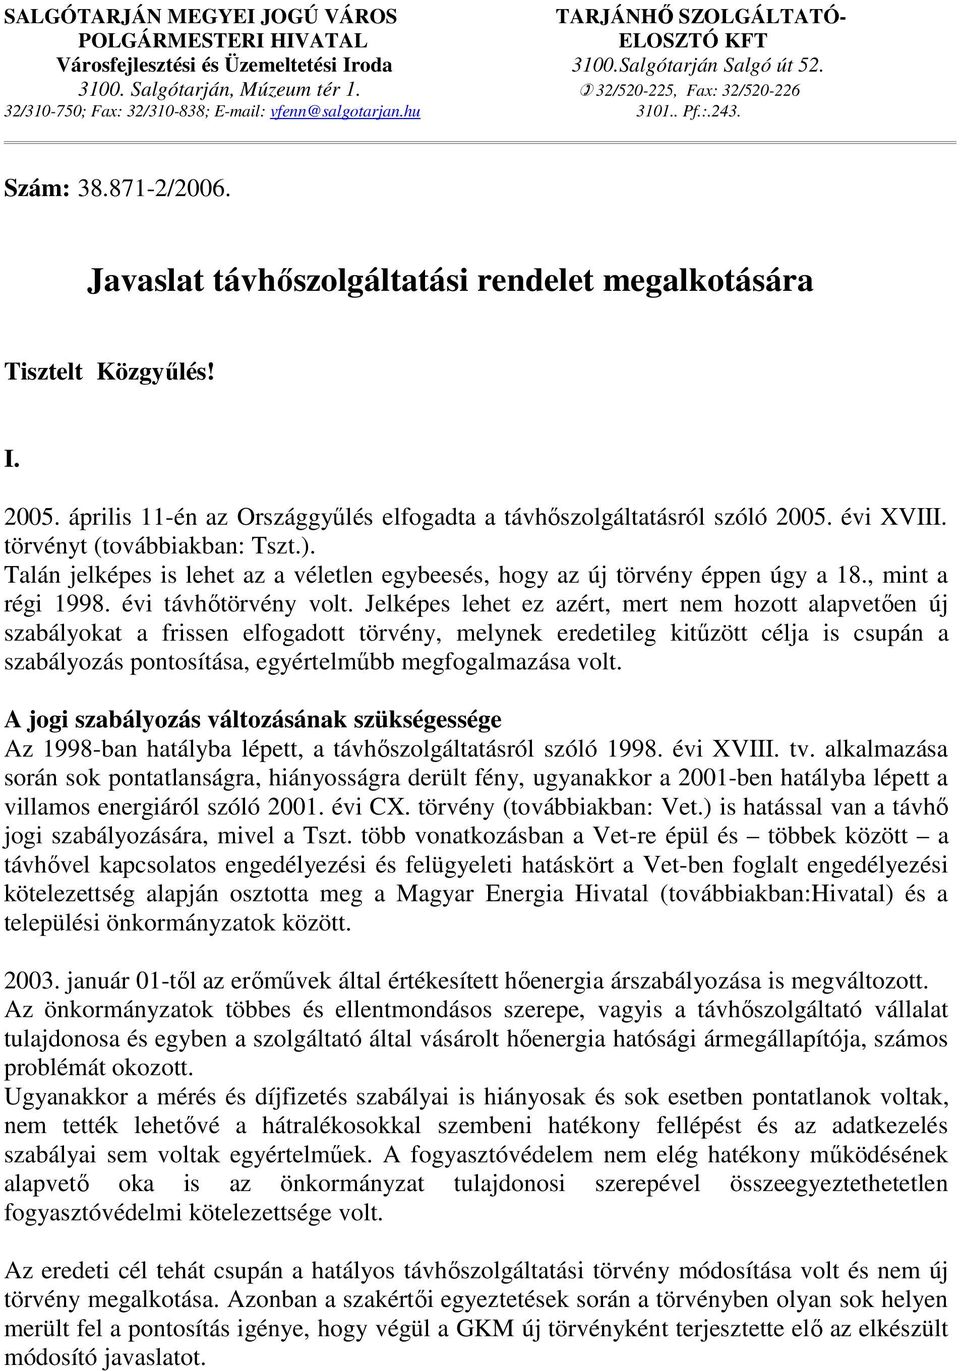 2005. április 11-én az Országgyőlés elfogadta a távhıszolgáltatásról szóló 2005. évi XVIII. törvényt (továbbiakban: Tszt.).